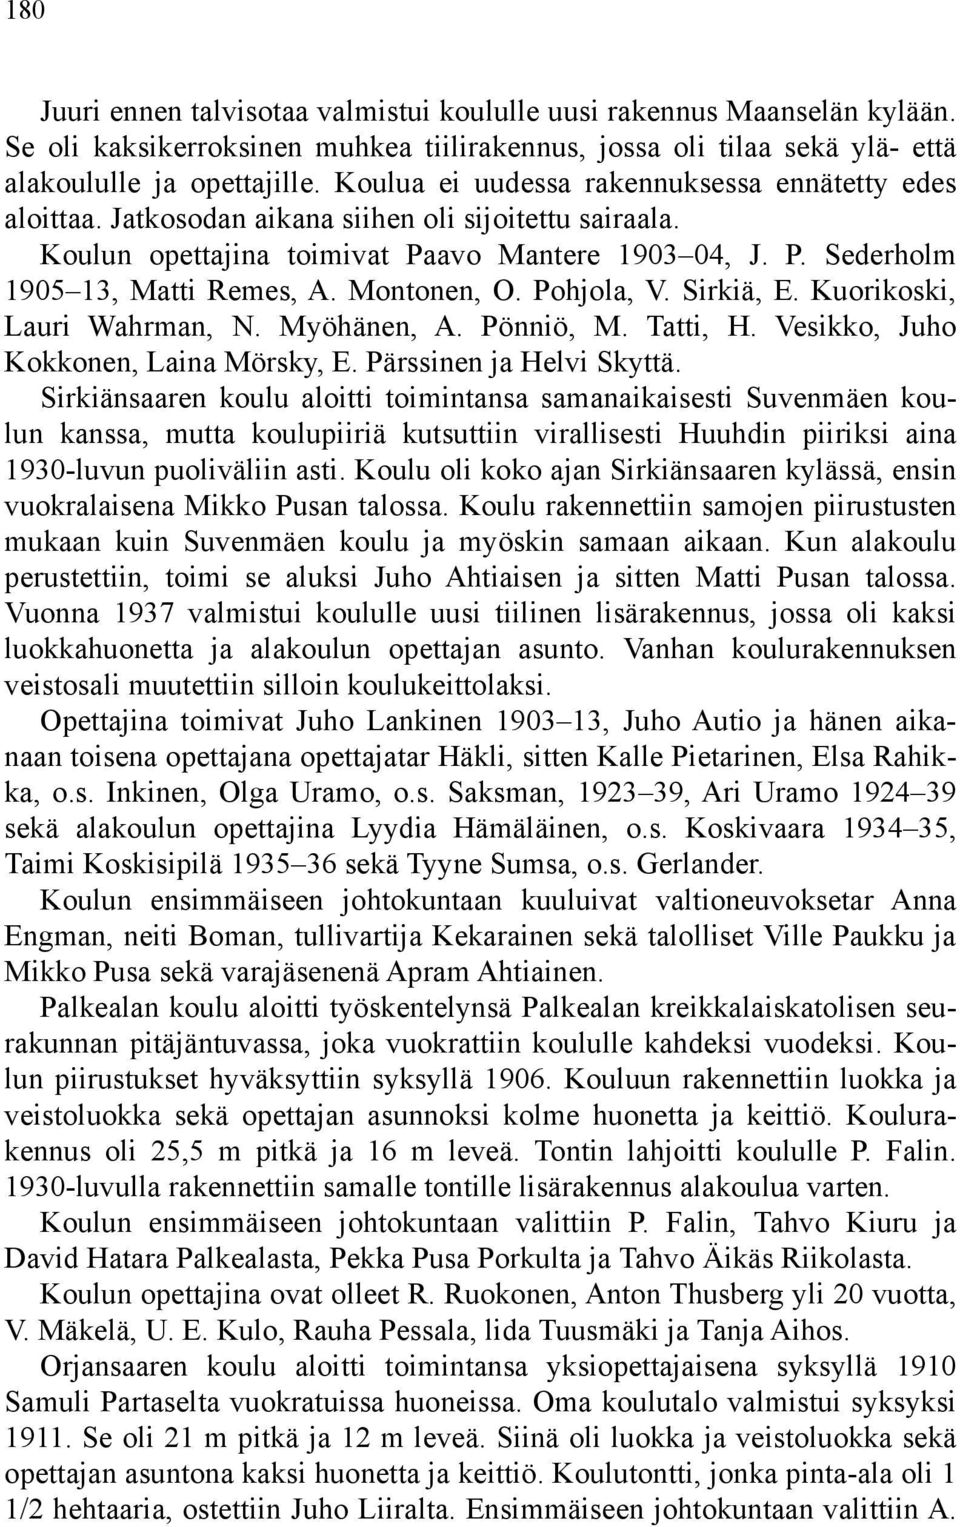 Montonen, O. Pohjola, V. Sirkiä, E. Kuorikoski, Lauri Wahrman, N. Myöhänen, A. Pönniö, M. Tatti, H. Vesikko, Juho Kokkonen, Laina Mörsky, E. Pärssinen ja Helvi Skyttä.